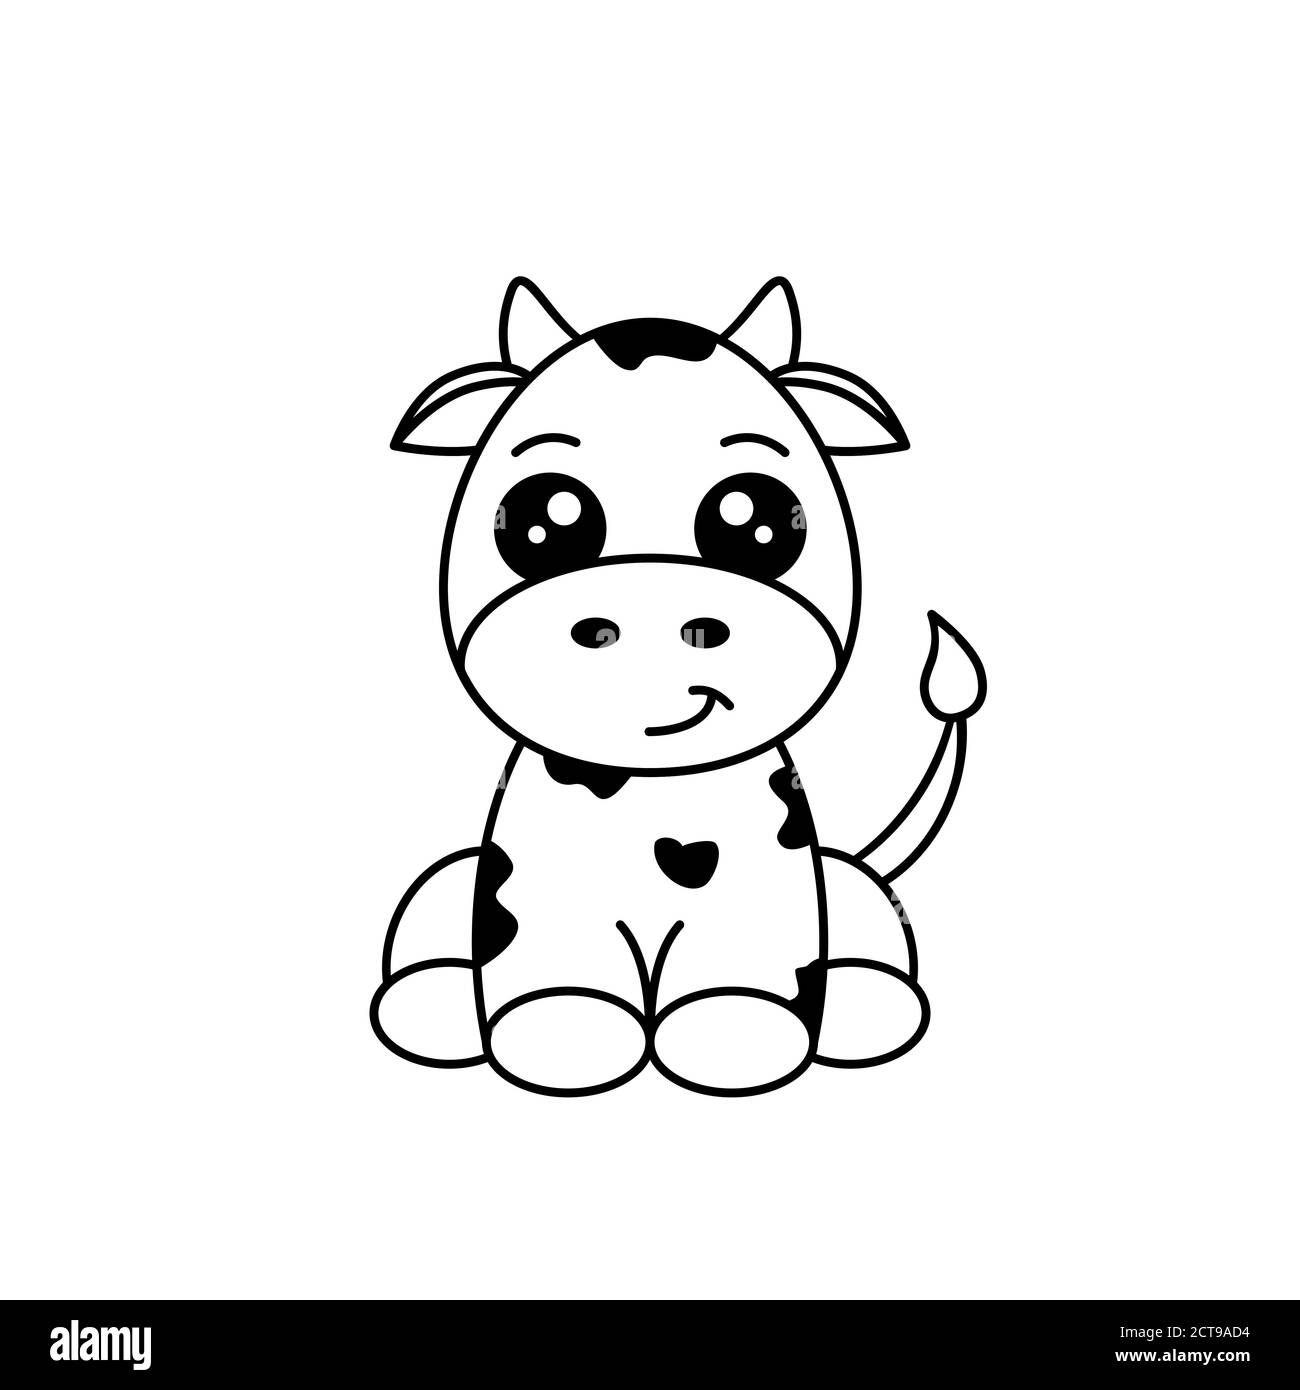 Süße schwarze und weiße Kuh. Lustige Tier Zeichentrickfigur. Kuh sitzt und lächelt. Baby Kuh mit schwarzen Flecken. Kindliche Kalbszeichnung. Vektor Stock Vektor